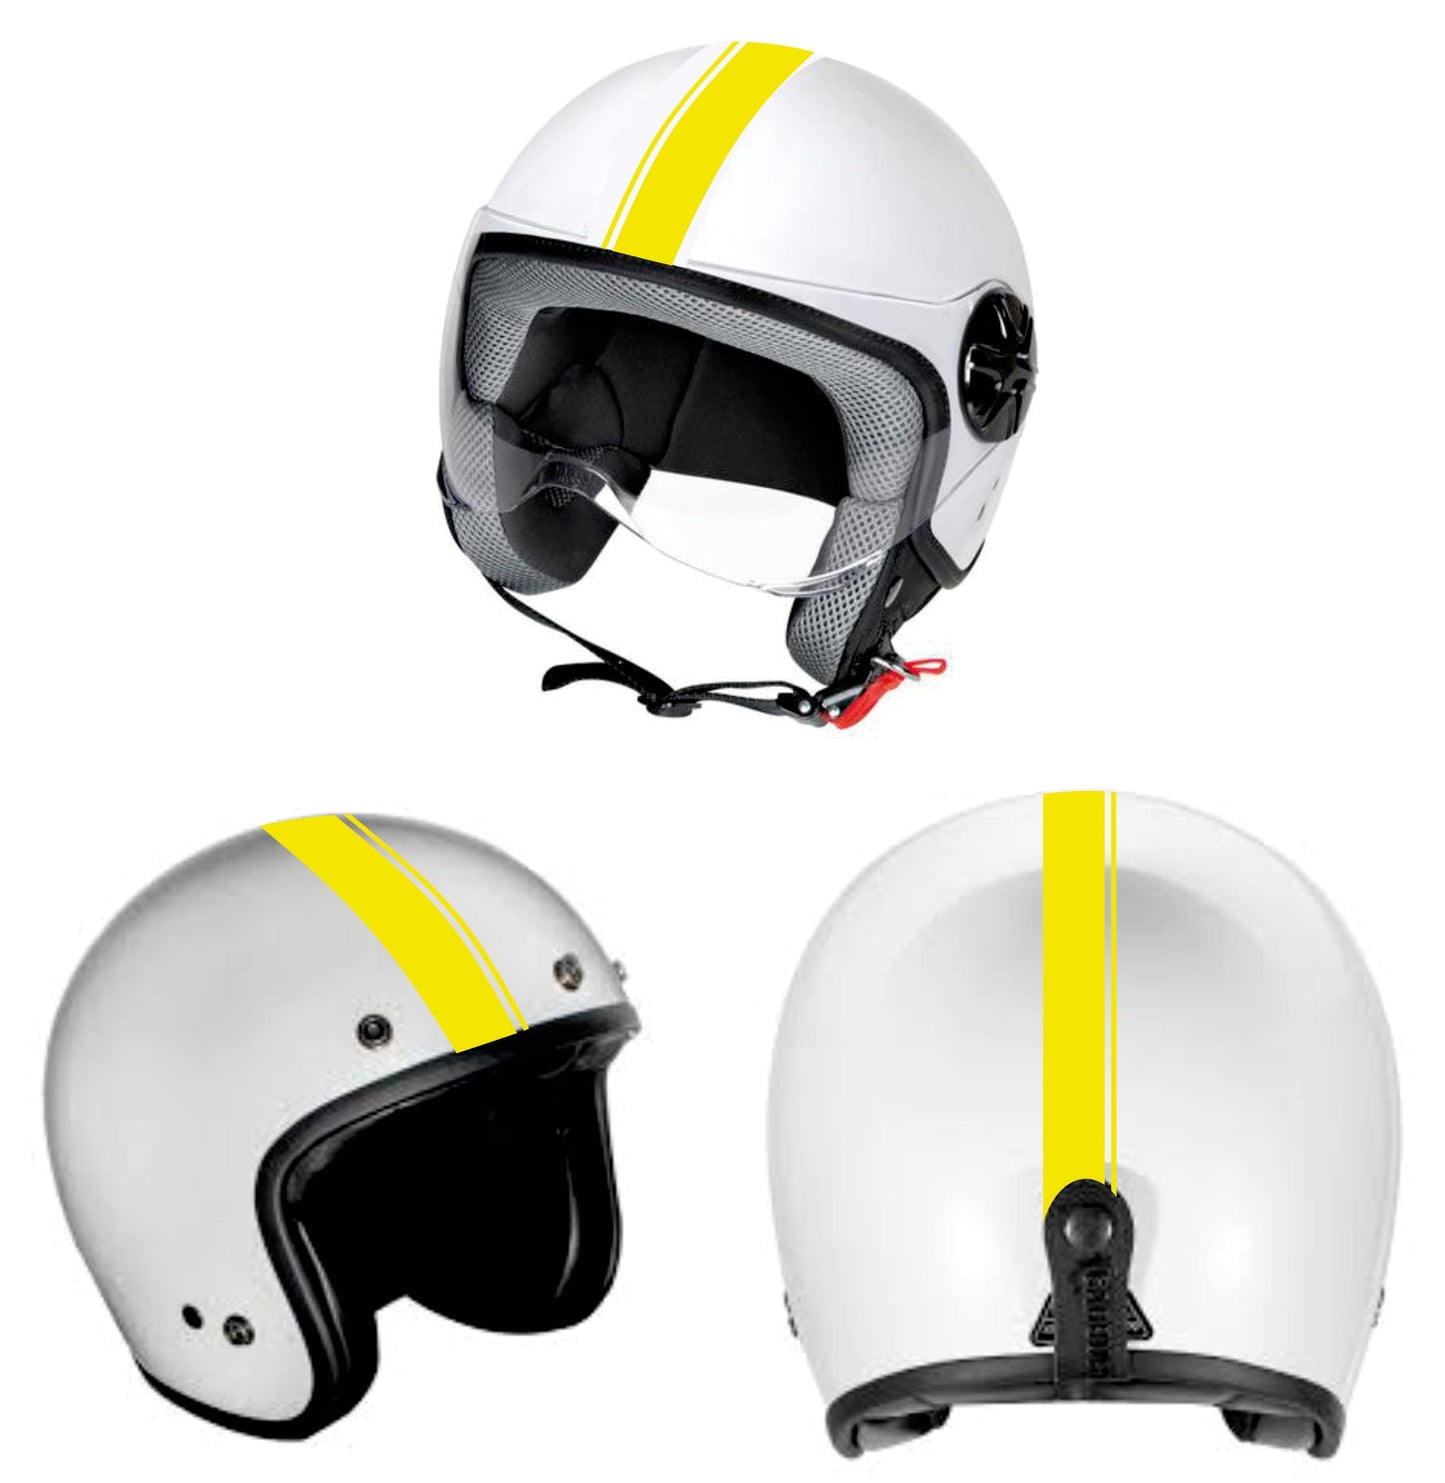 DualColorStampe Adesivi per casco moto motorino Helmet universale Stripes Strisce Design sportivo stickers STRISCIA DOPPIA adesiva C0067 a €14.99 solo da DualColorStampe